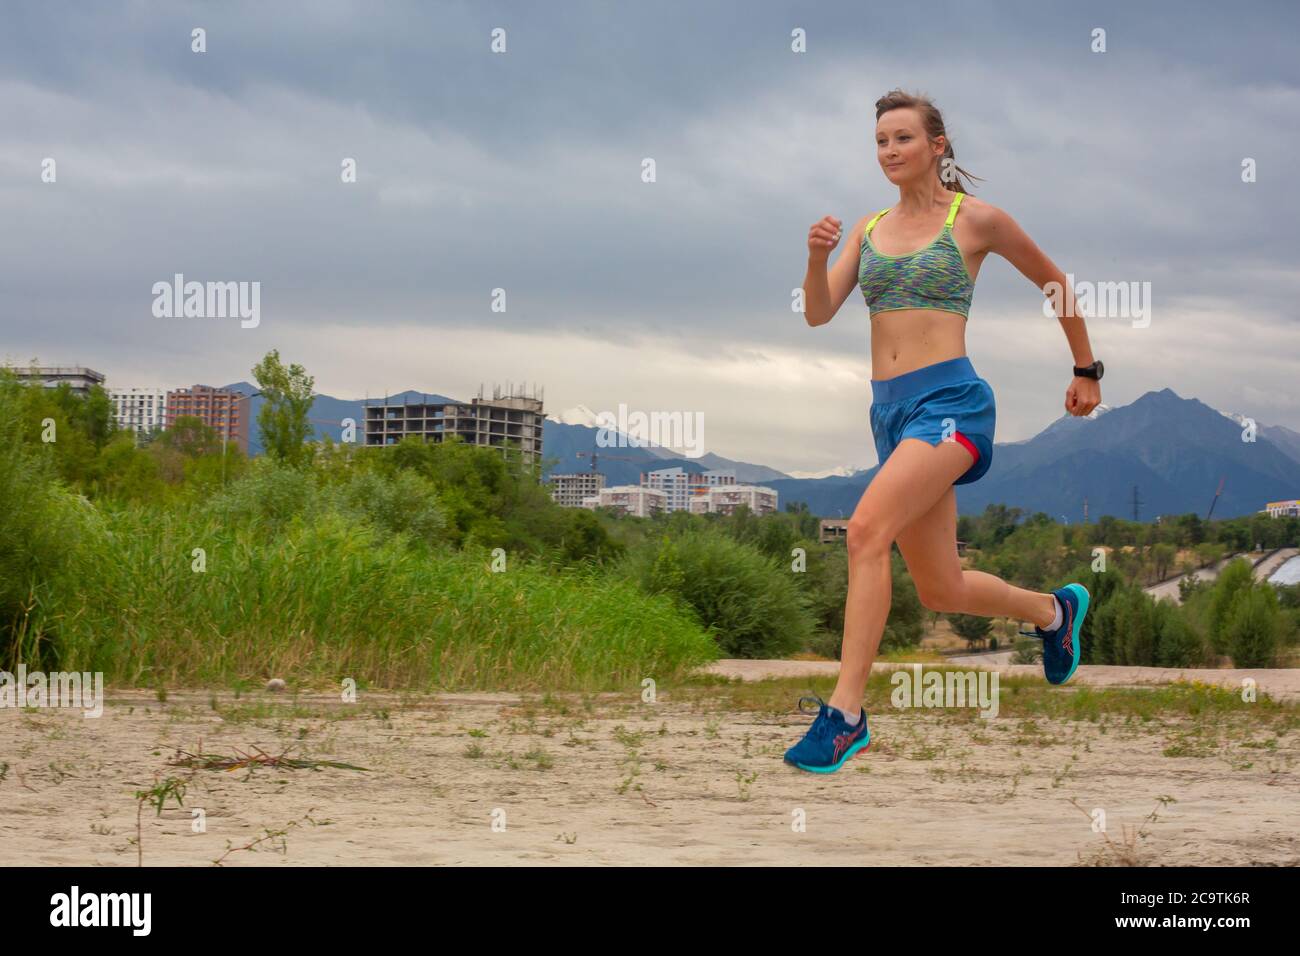 Laufen im Stadtpark. Frau Läuferin vor dem Joggen mit Montreal Skyline im Hintergrund Stockfoto